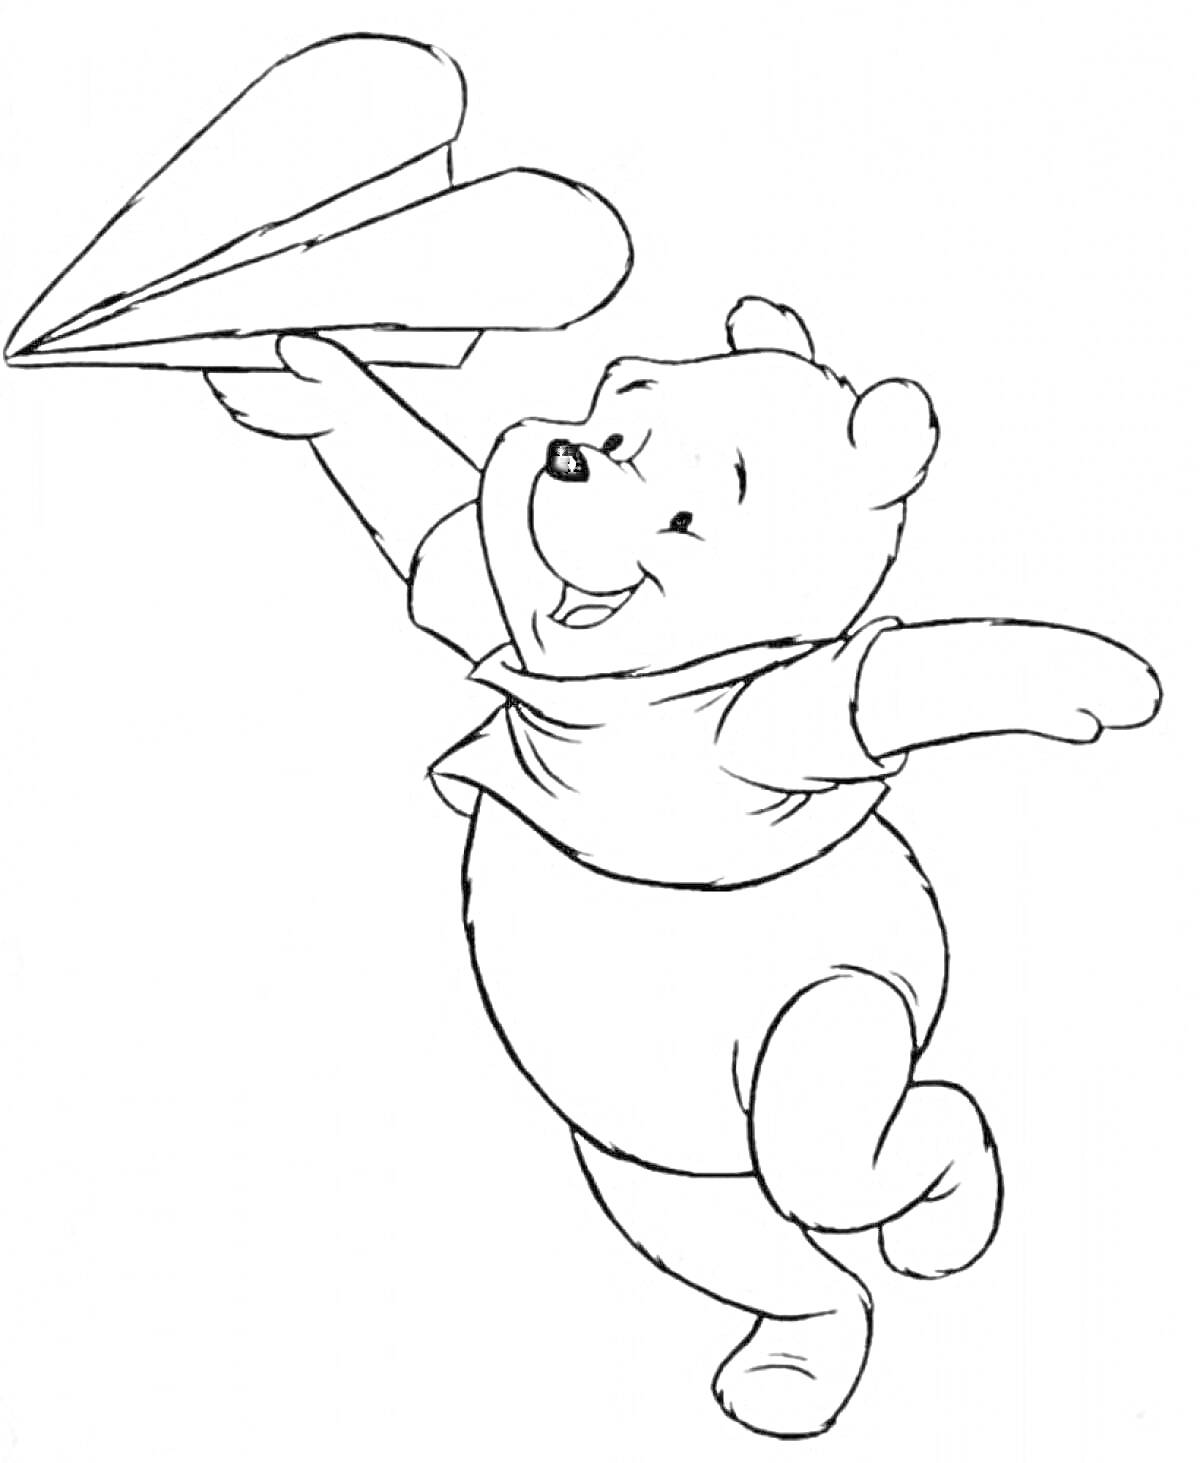 Раскраска Винни-Пух с бумажным самолетиком